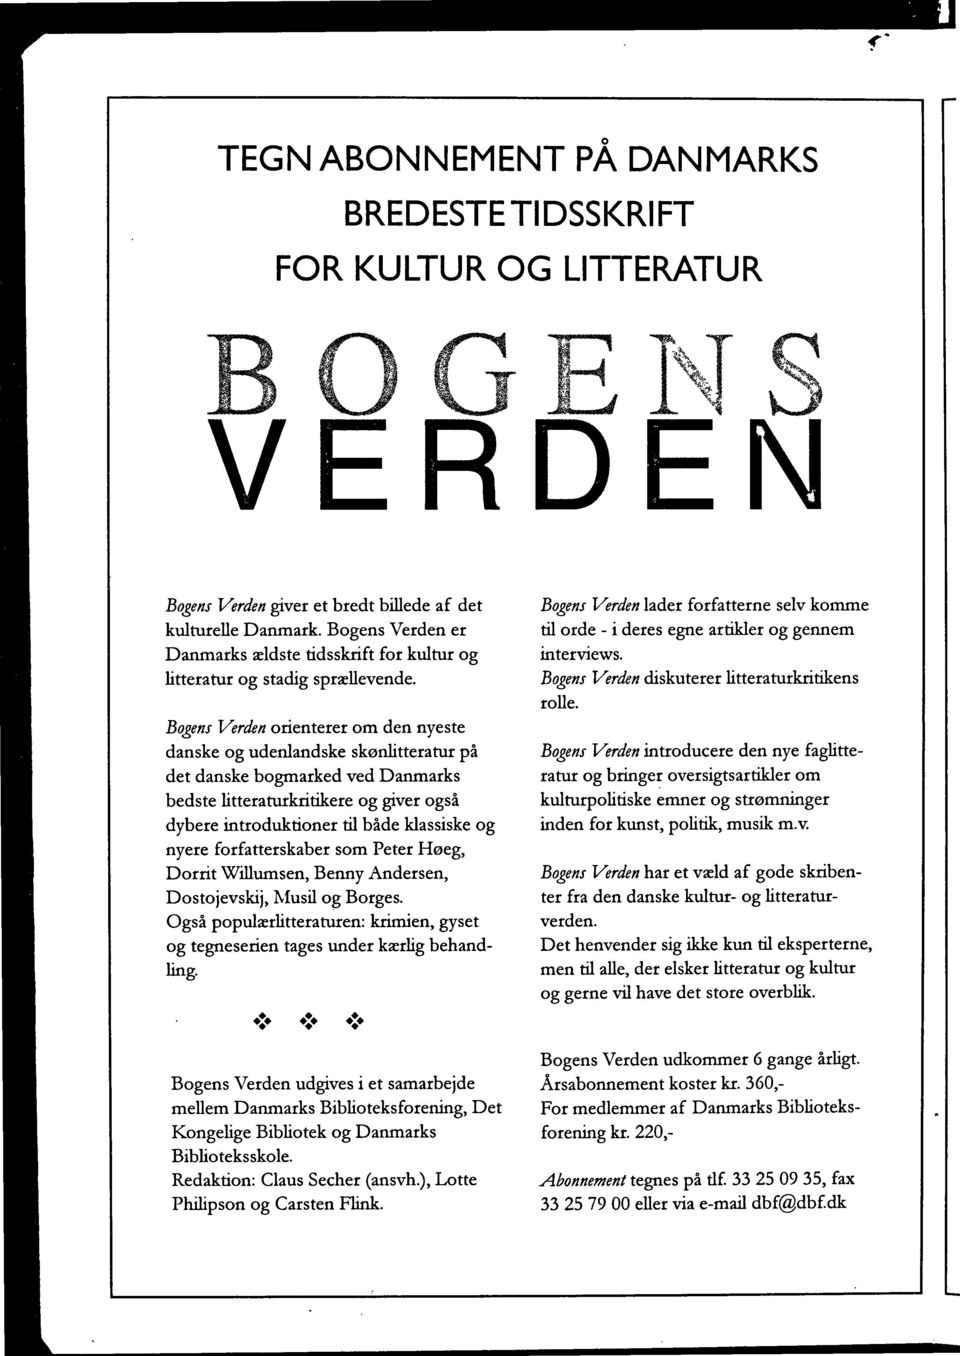 Bogens Verden orienterer om den nyeste danske og udenlandske skønlitteratur på det danske bogmarked ved Danmarks bedste litteraturkritikere og giver også dybere introduktioner til både klassiske og